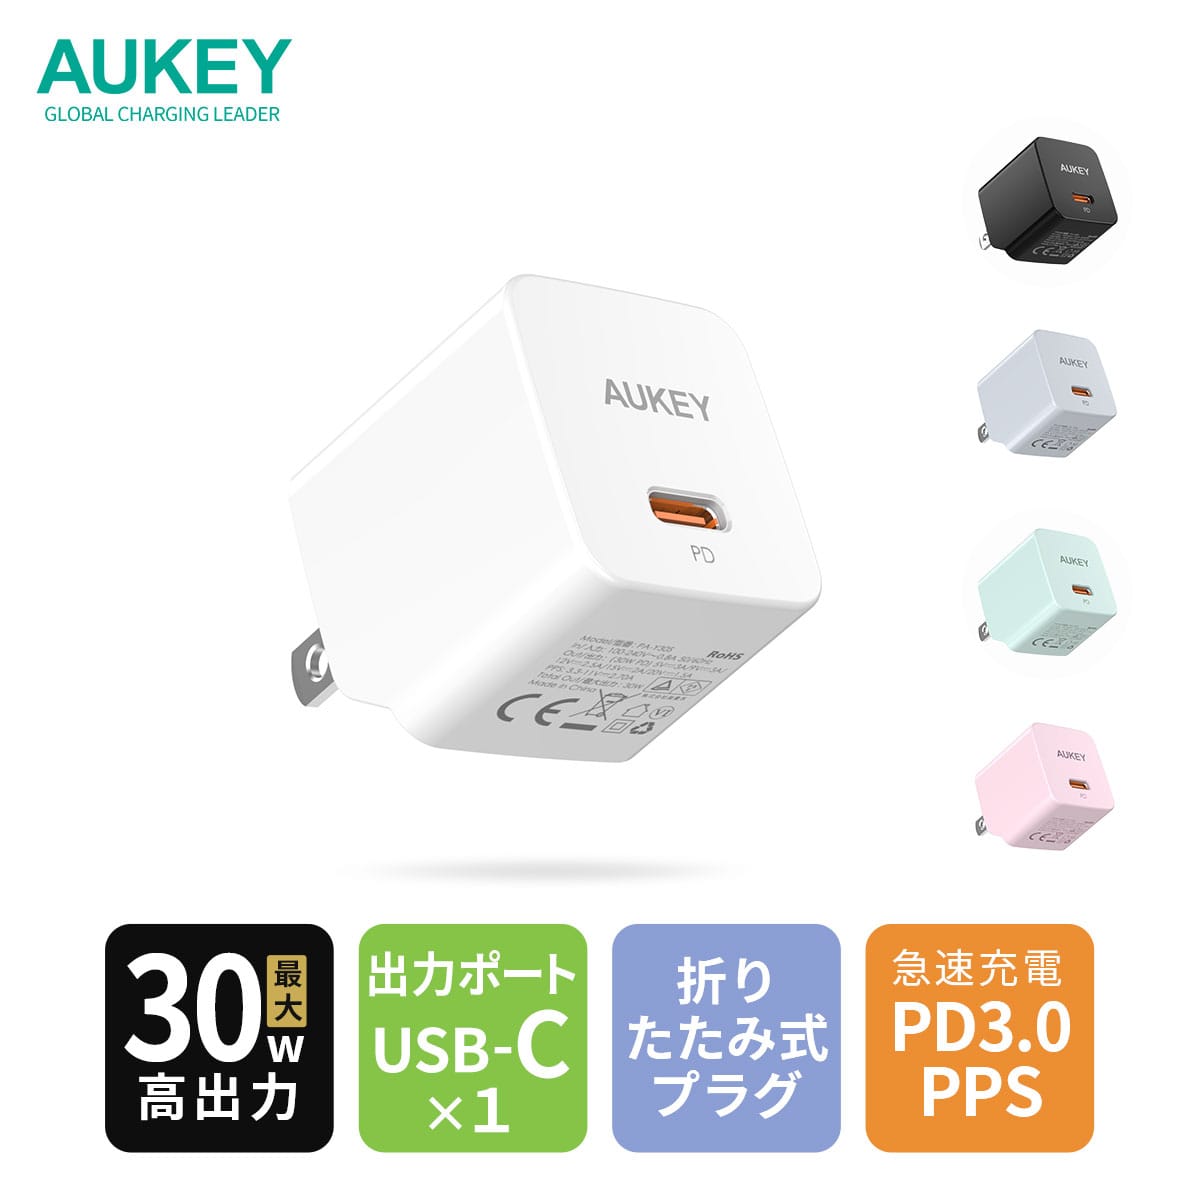 AUKEY、30W USB-C充電器を発売